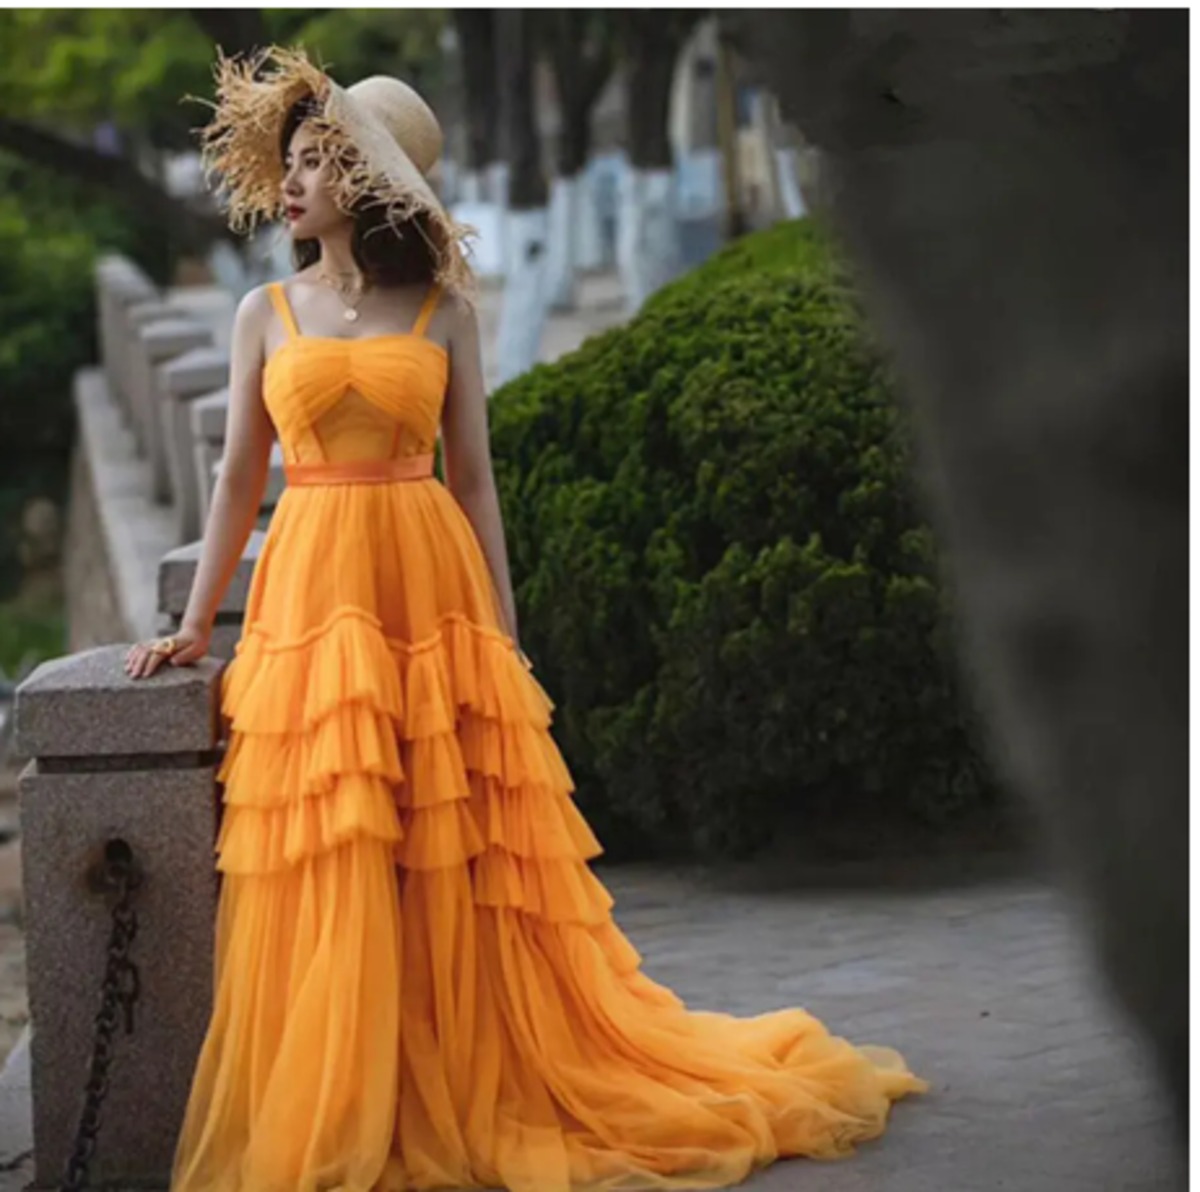 セクシー Vネックドレス 憧れのドレス オレンジ 背中見せ-